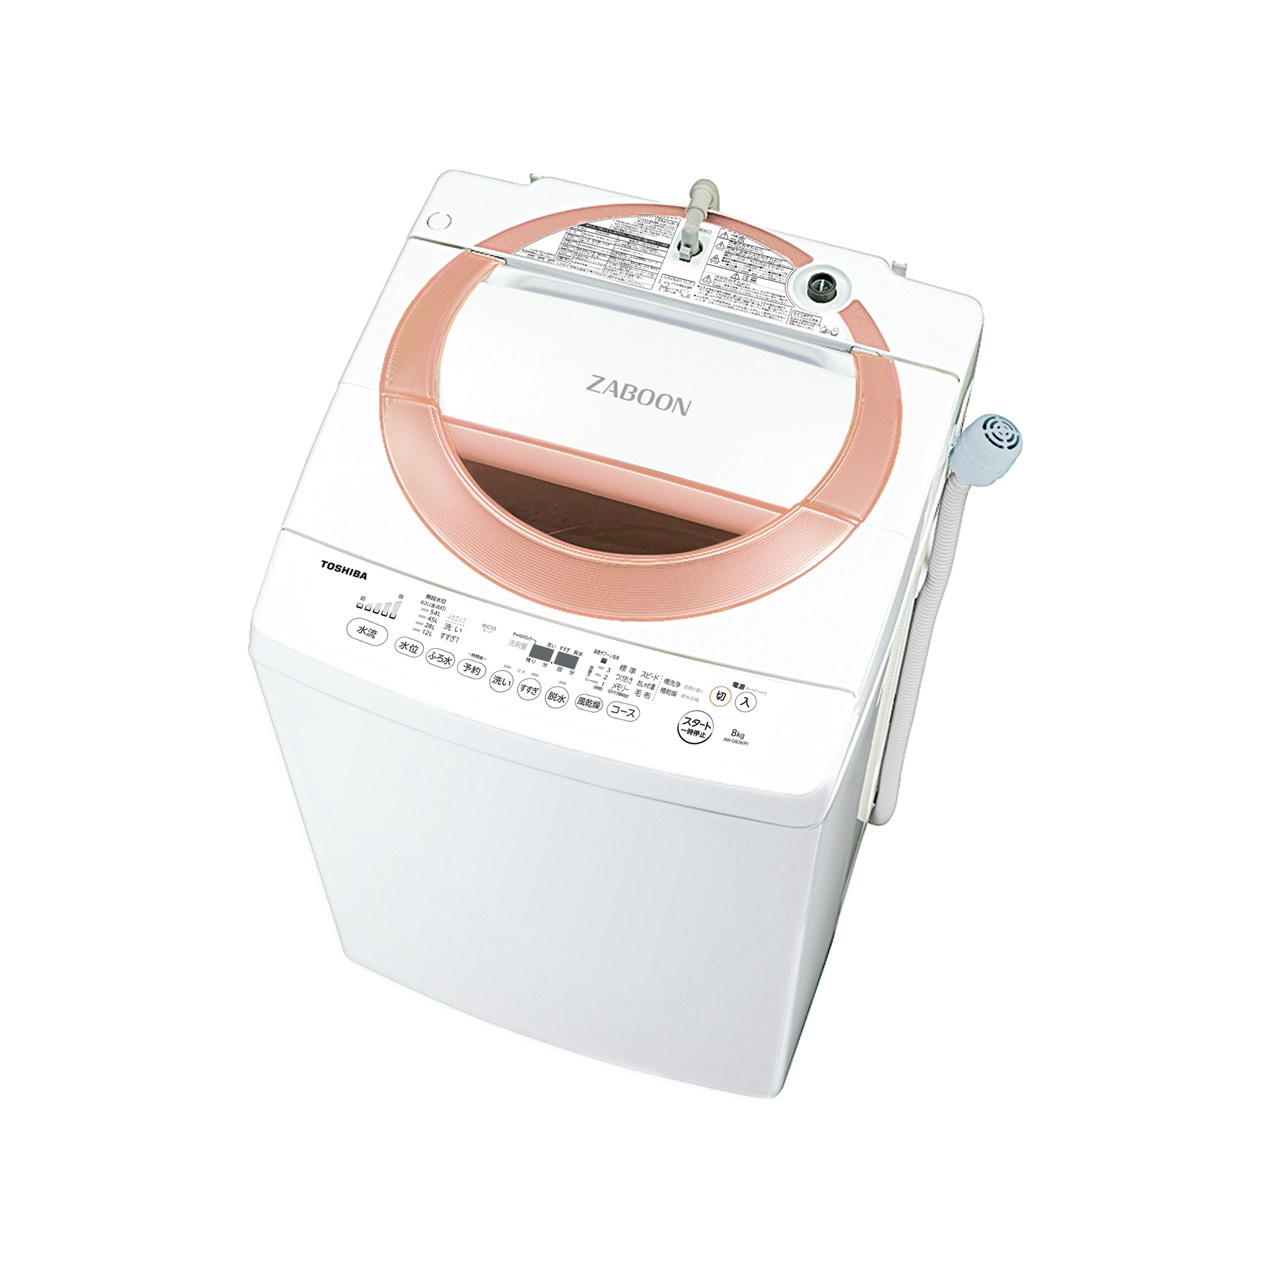 東芝AW-D836全自動洗濯機